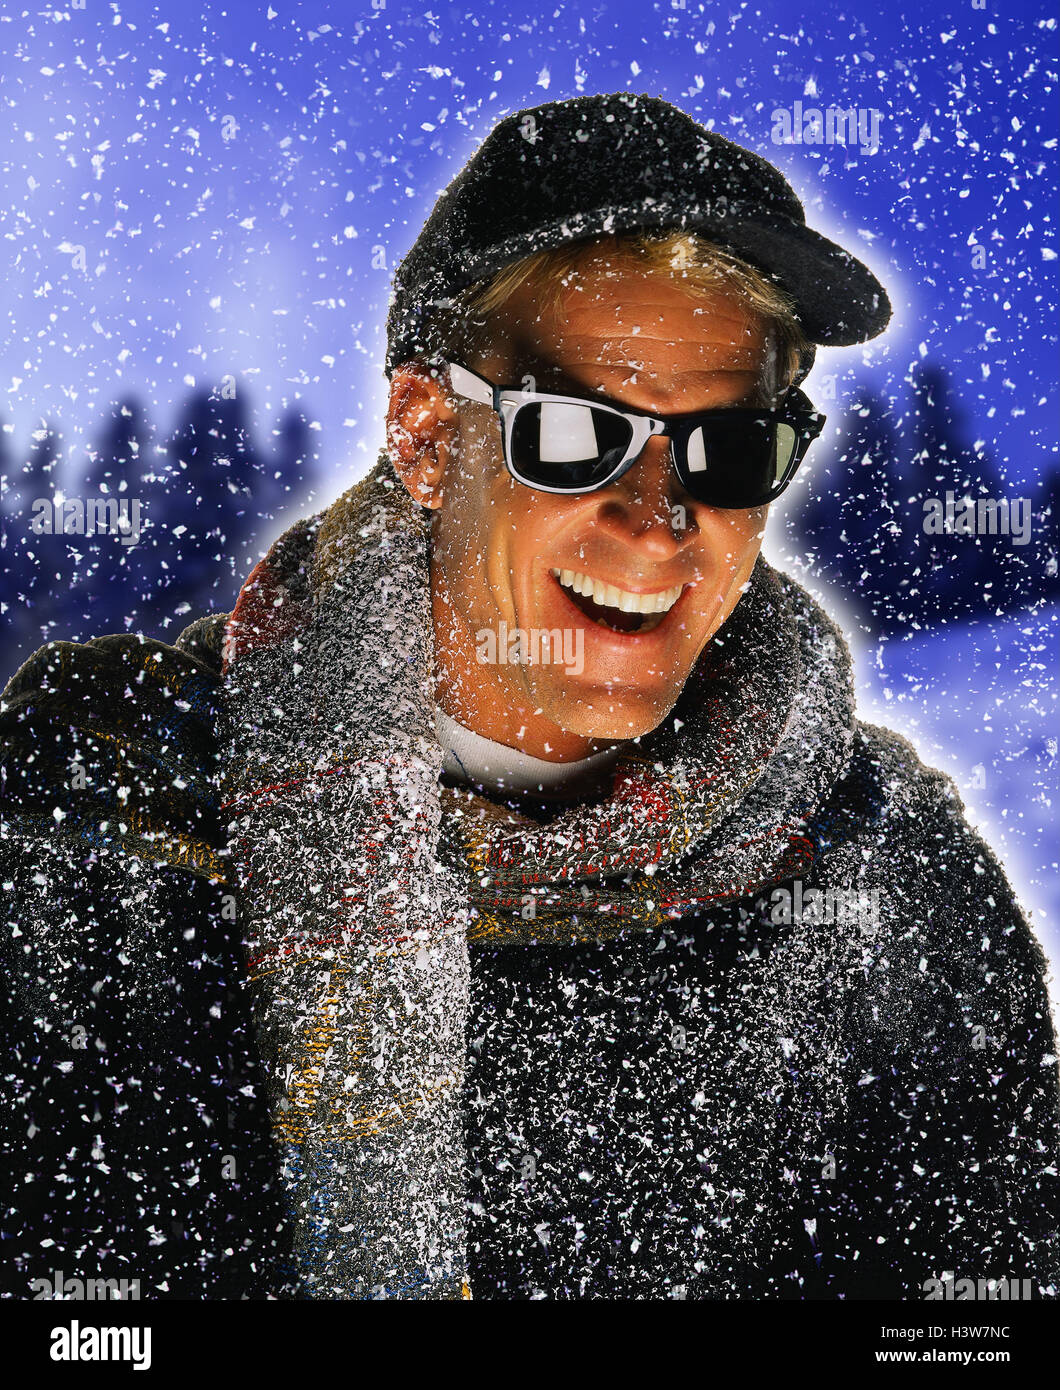 L'uomo, occhiali da sole, pullover, cappuccio, sciarpa, nevicata